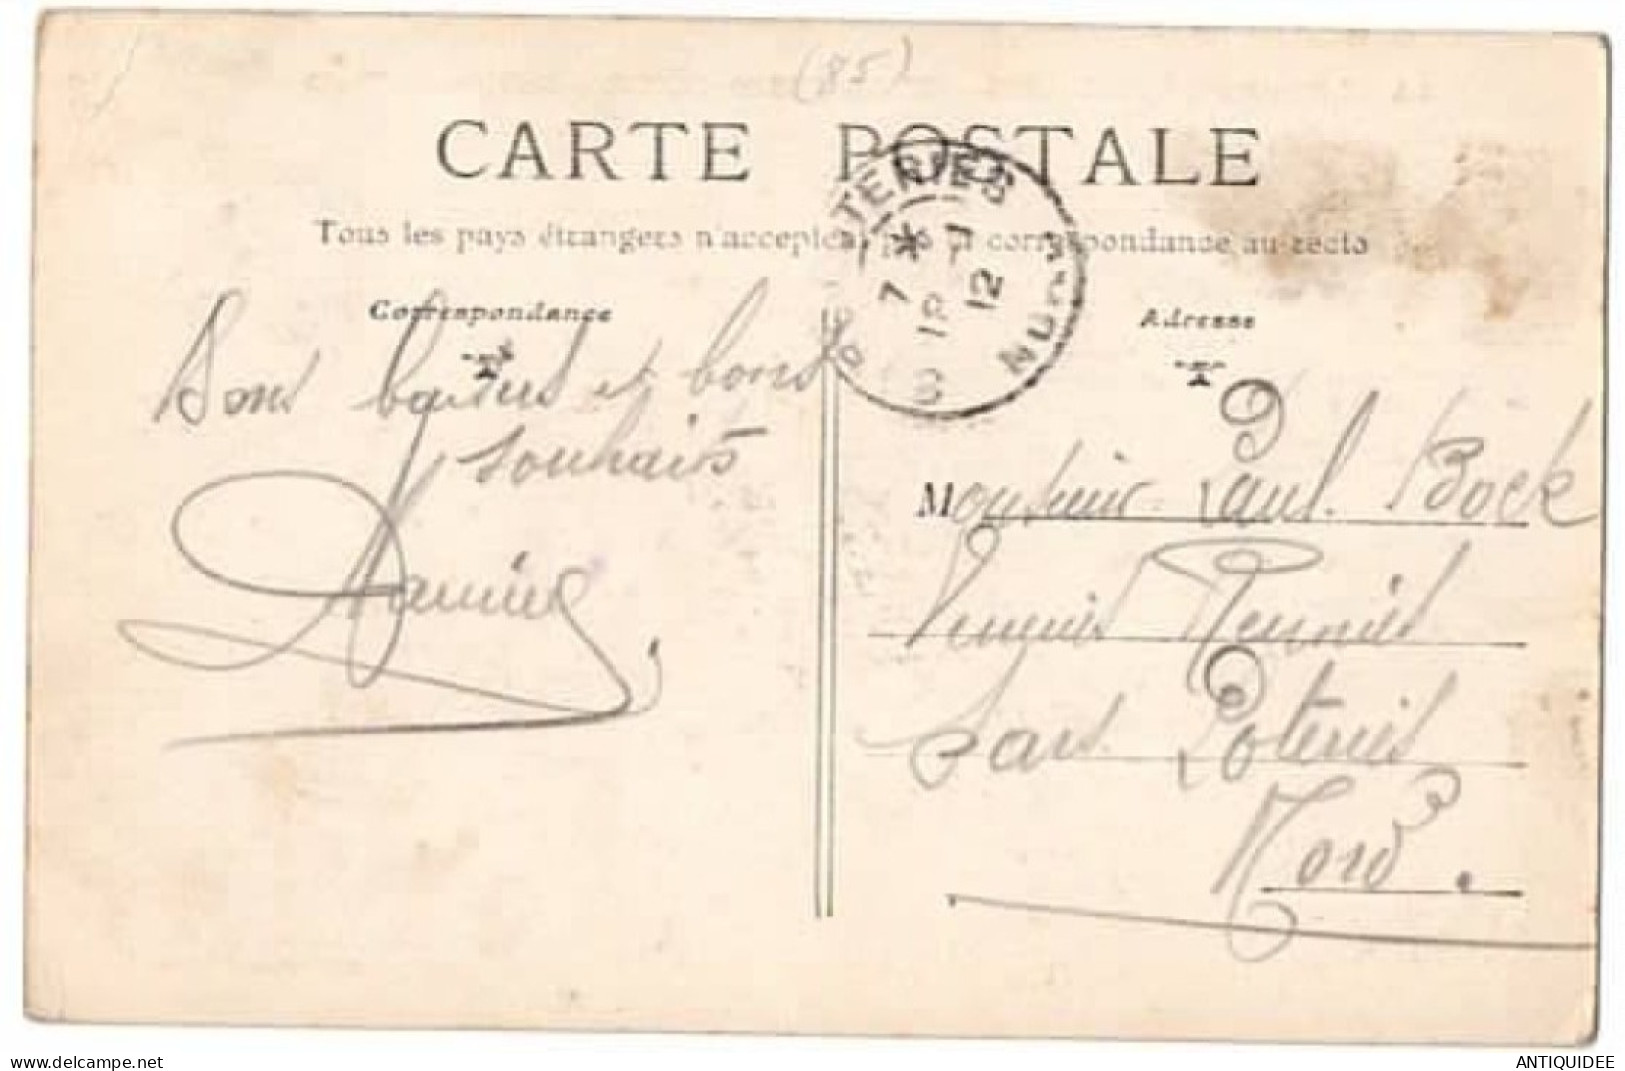 MORTAGNE-sur-SEVRE - La Sèvre Au Touët - LA SUISSE VENDEENNE - (18 JANVIER 1912) - - Mortagne Sur Sevre